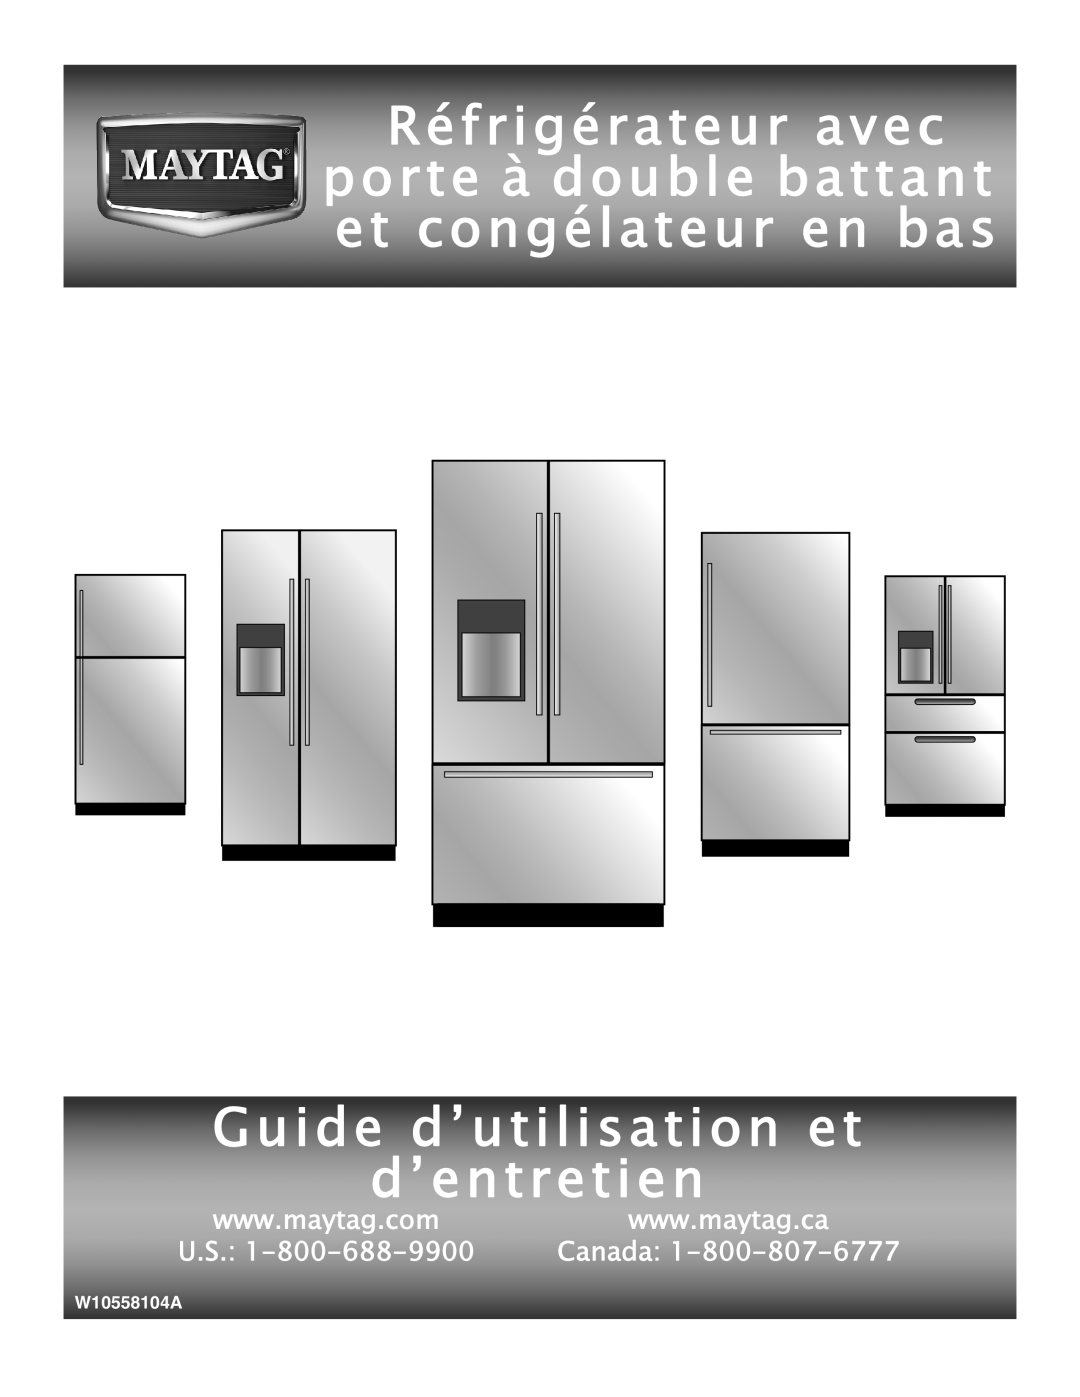 Maytag W10558104A Réfrigérateur avec porte à double battant et congélateur en bas, Guide d’utilisation et d’entretien 